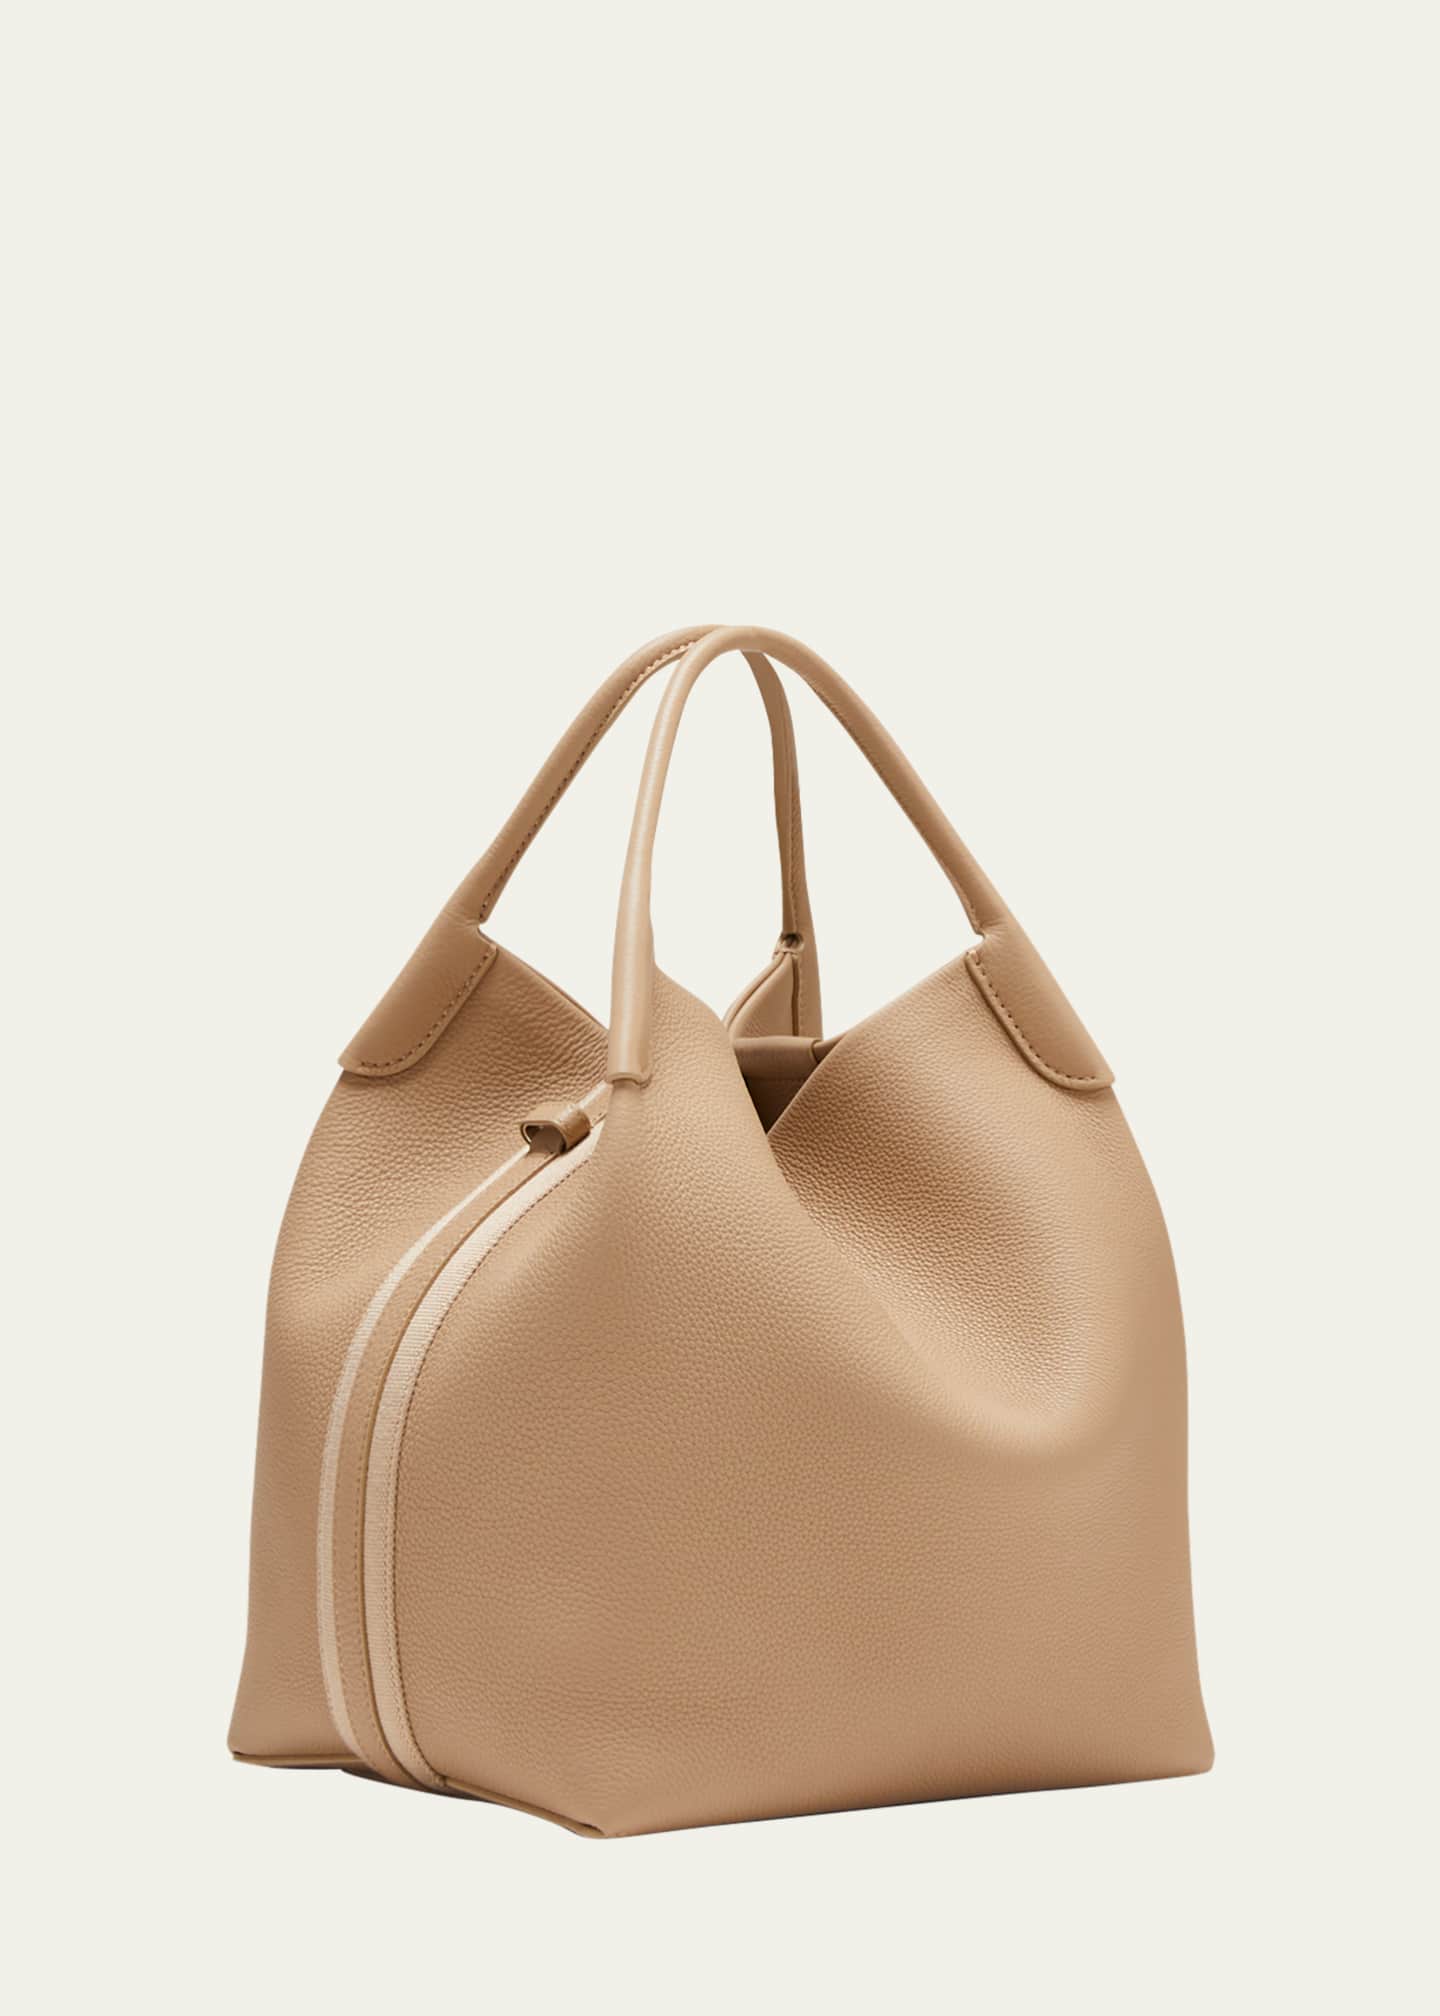 Loro Piana Bags for Women